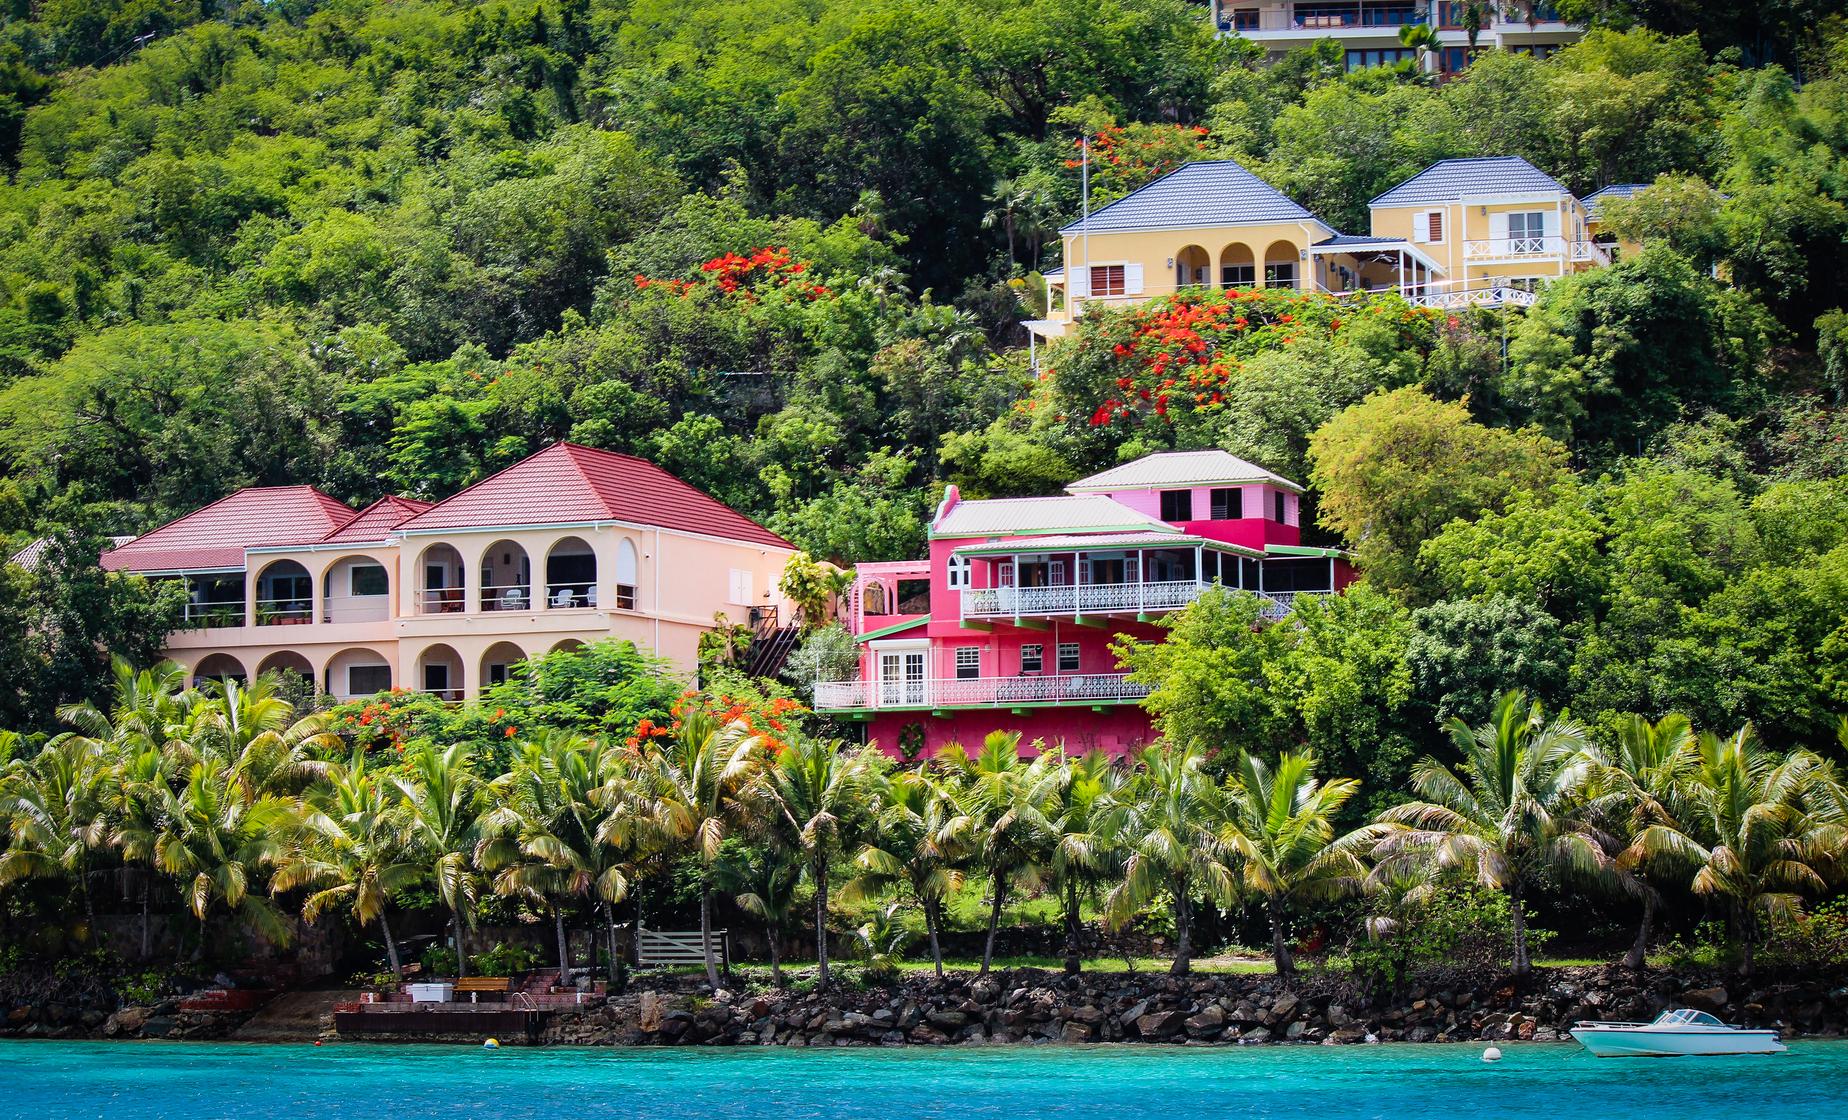 Unique Treasures of Tortola